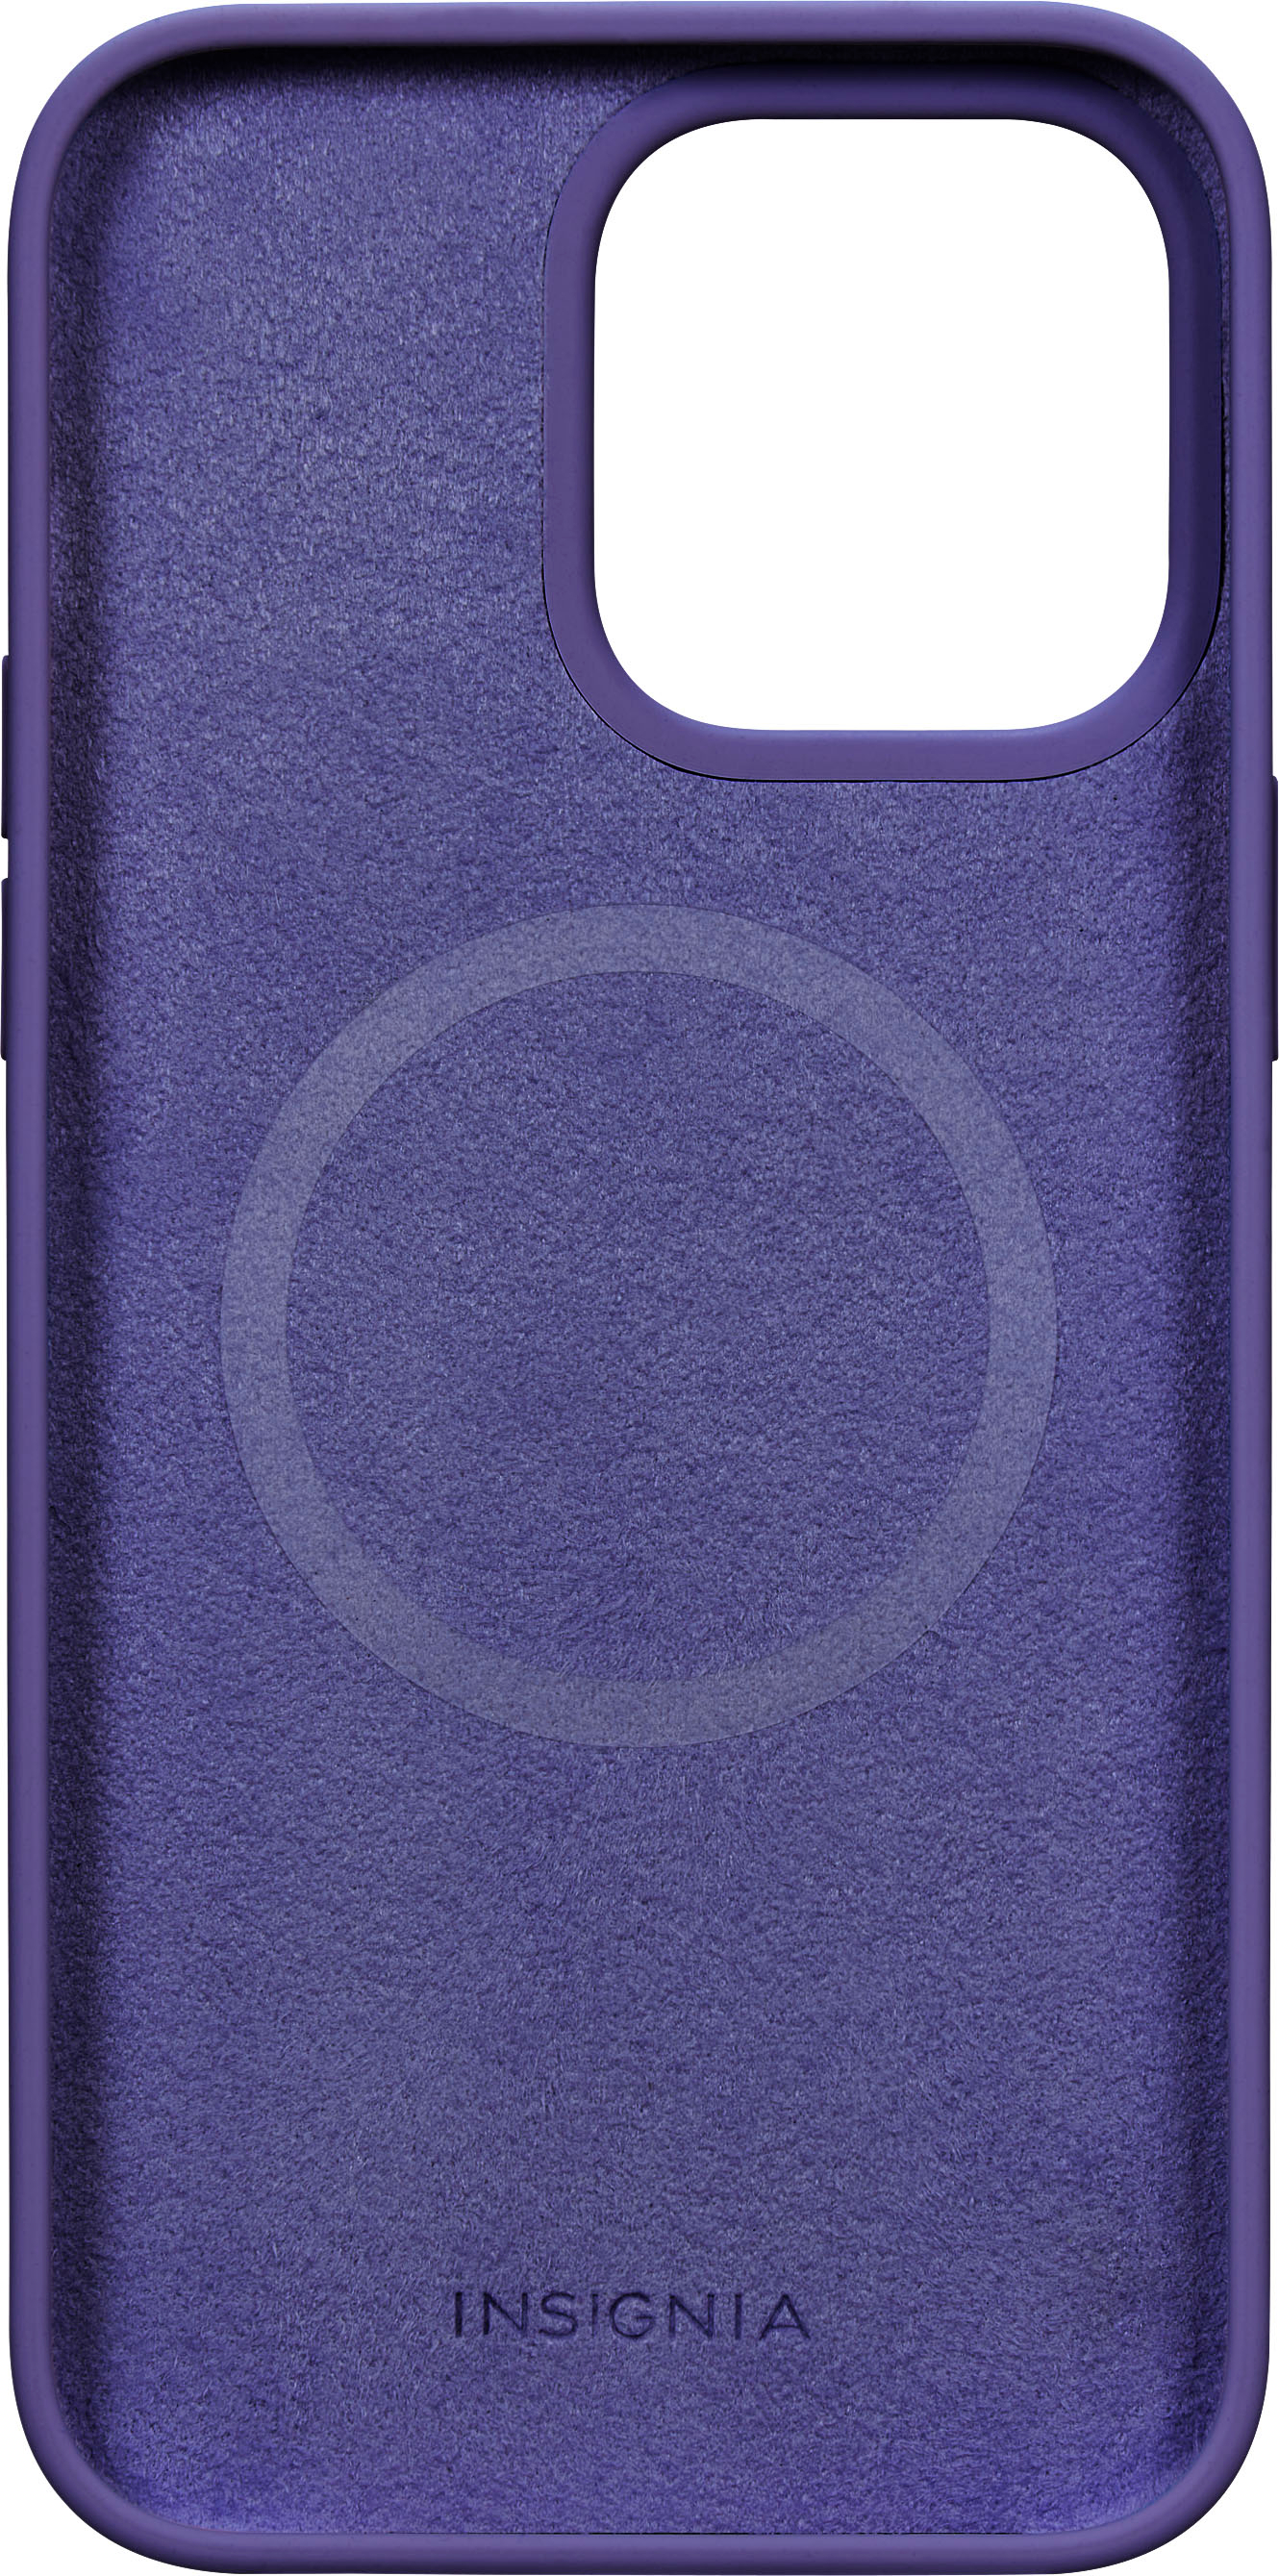 Deep Purple Apple iPhone Skins 